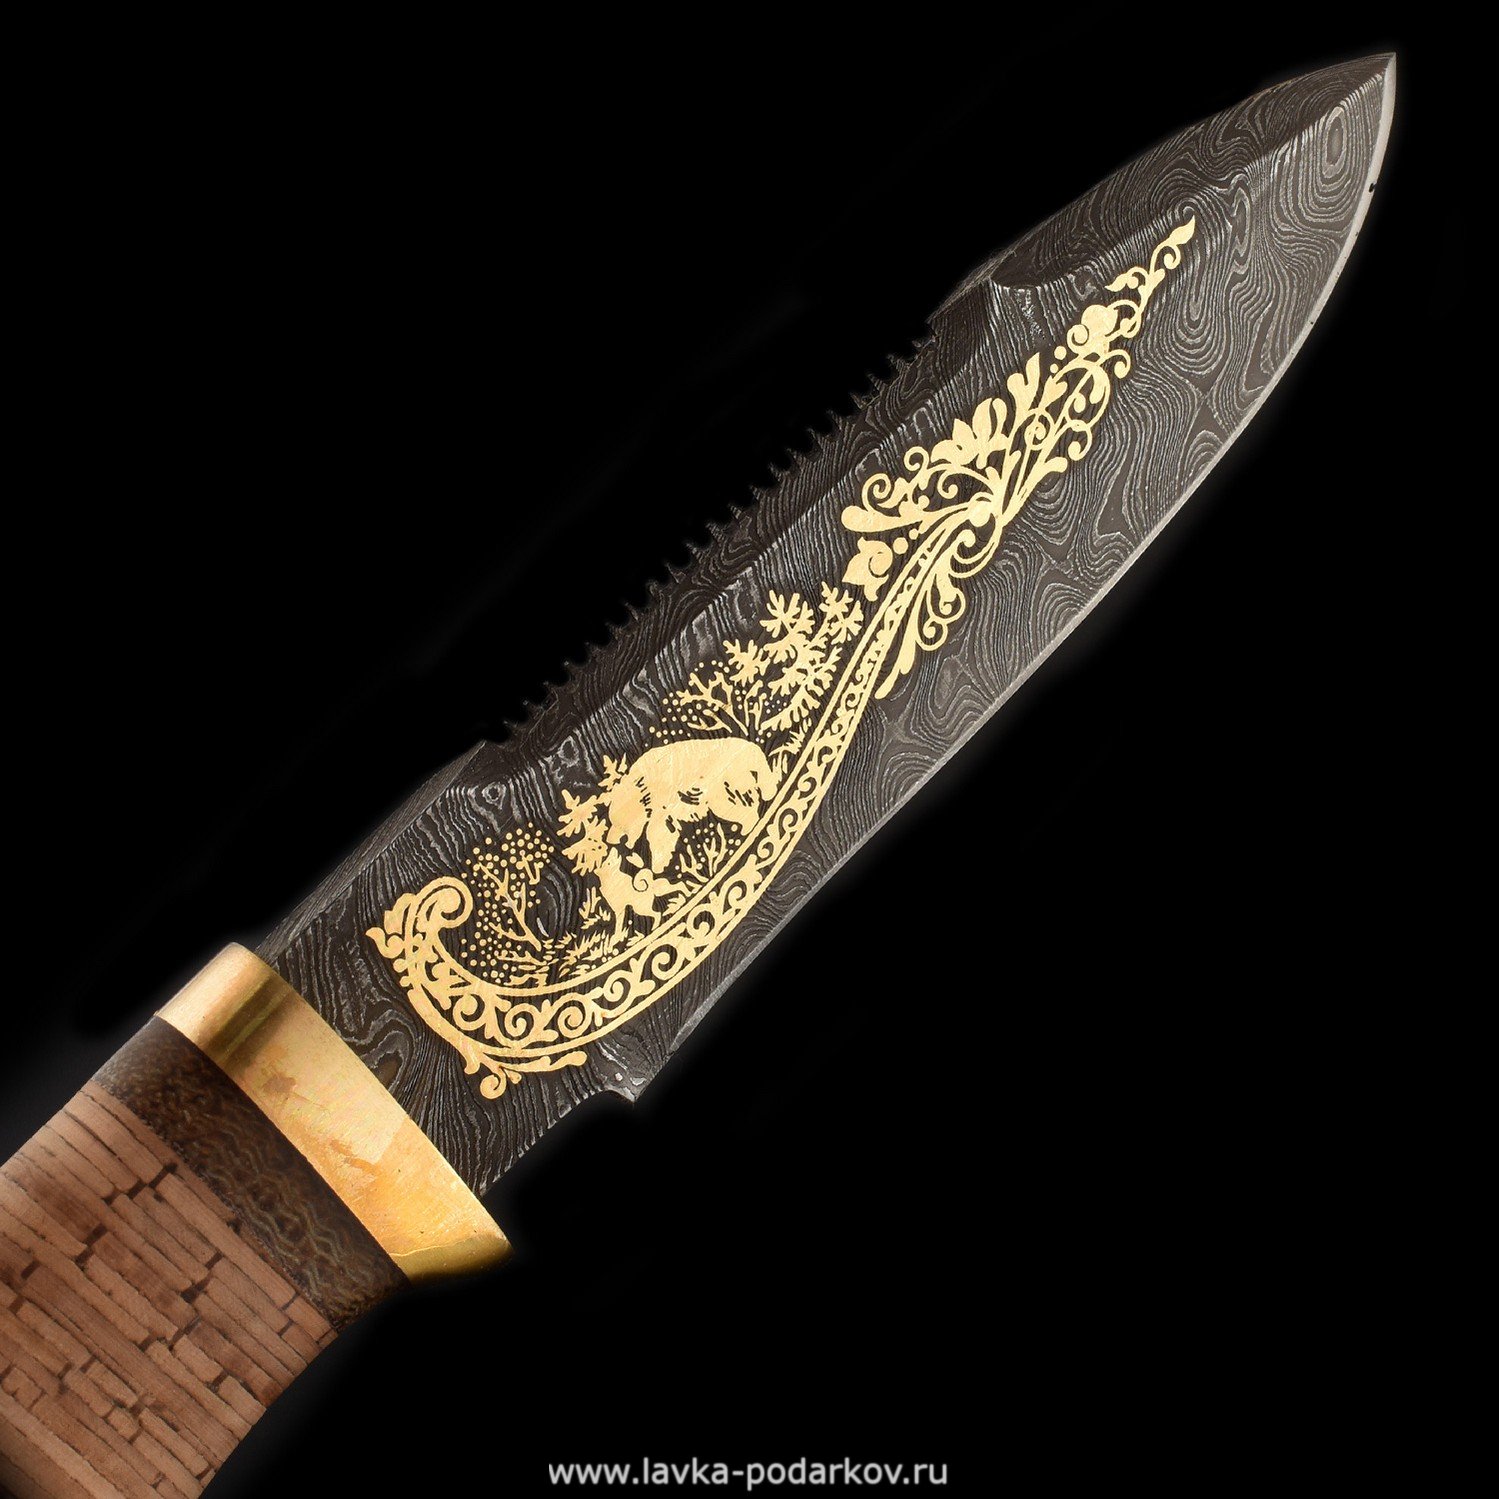 Производители ножей златоуста